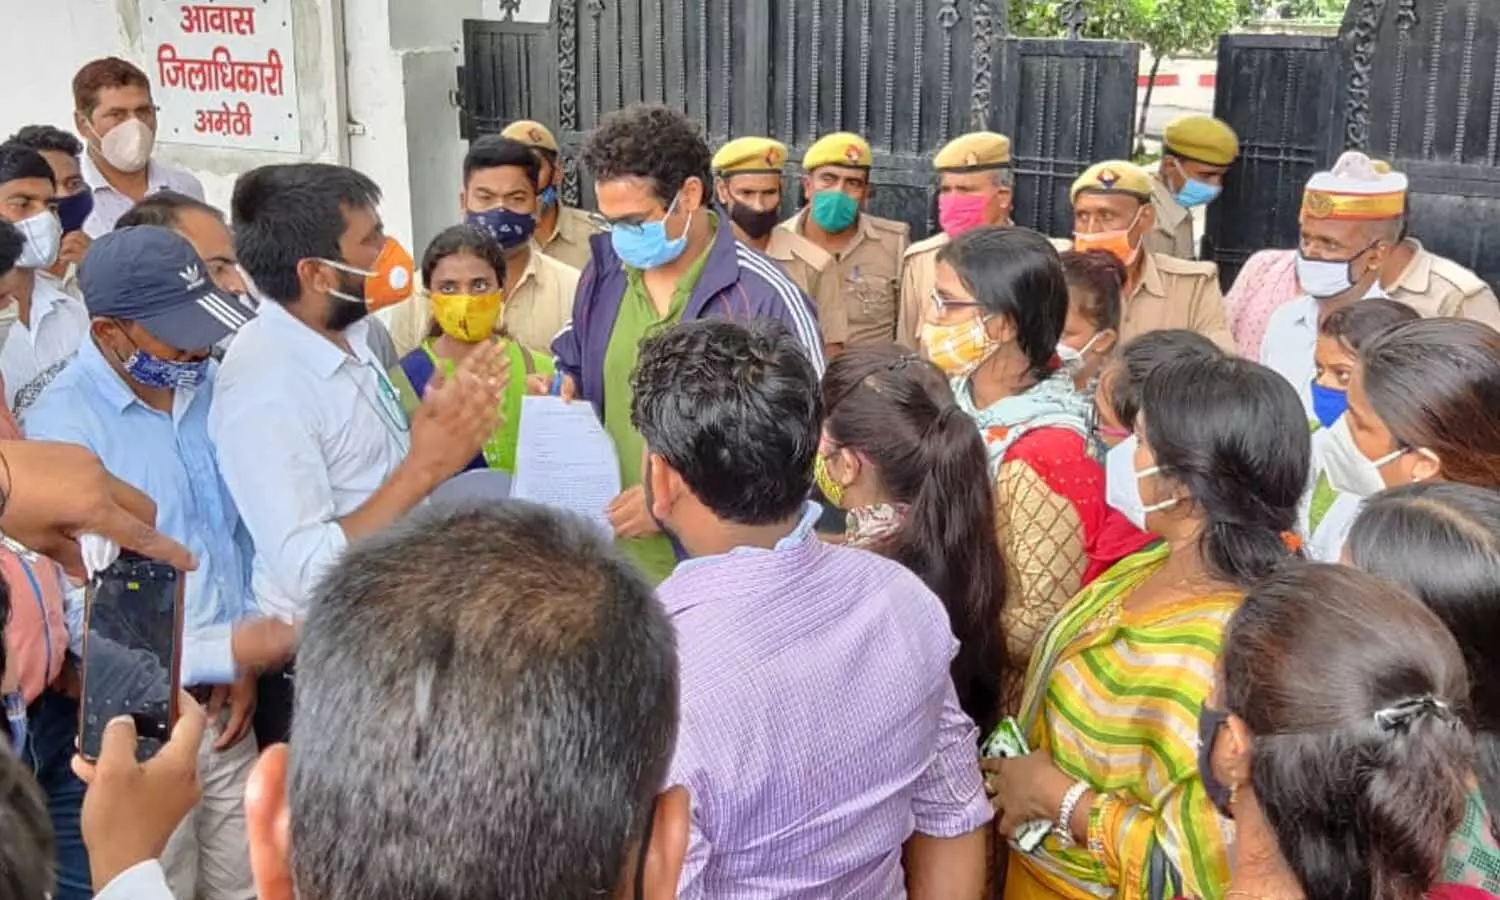 Amethi Crime News: DPRO की गिरफ्तारी के खिलाफ कर्मचारियों ने किया प्रदर्शन, सफाई कर्मचारी पर लगाए गंभीर आरोप